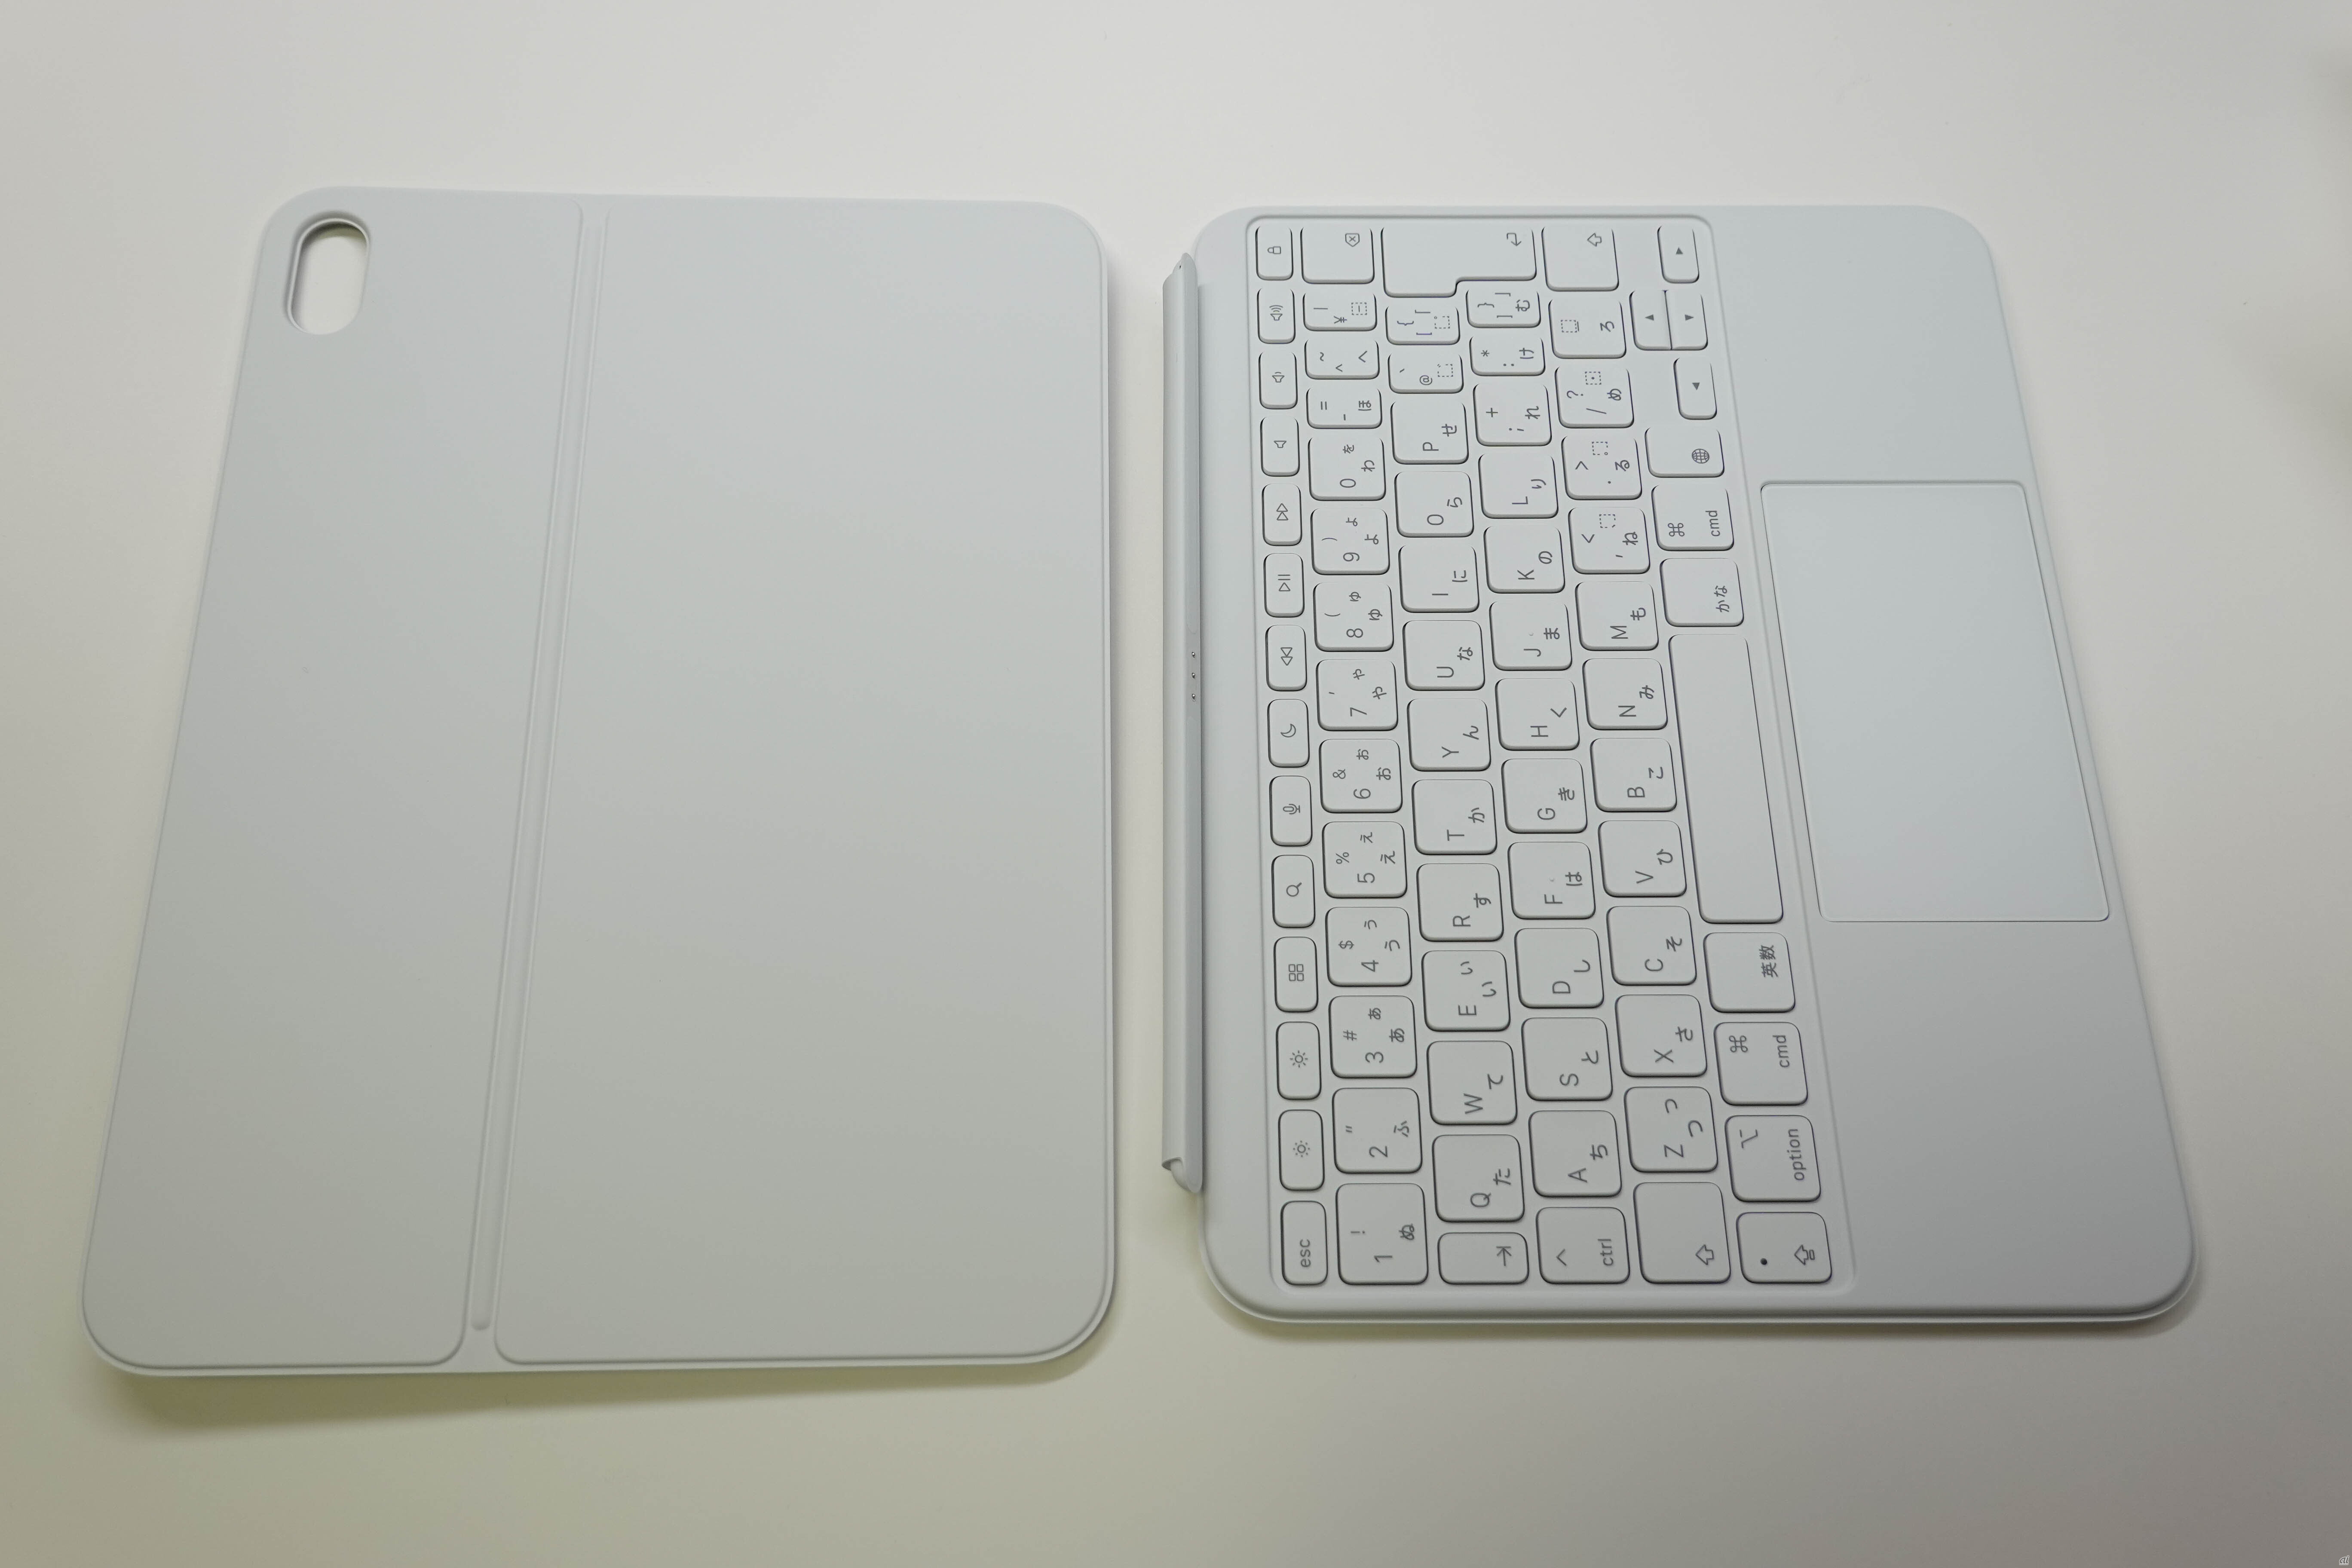 取り外せるキーボードと、iPadを守るバックパネルの2つのパーツで構成される